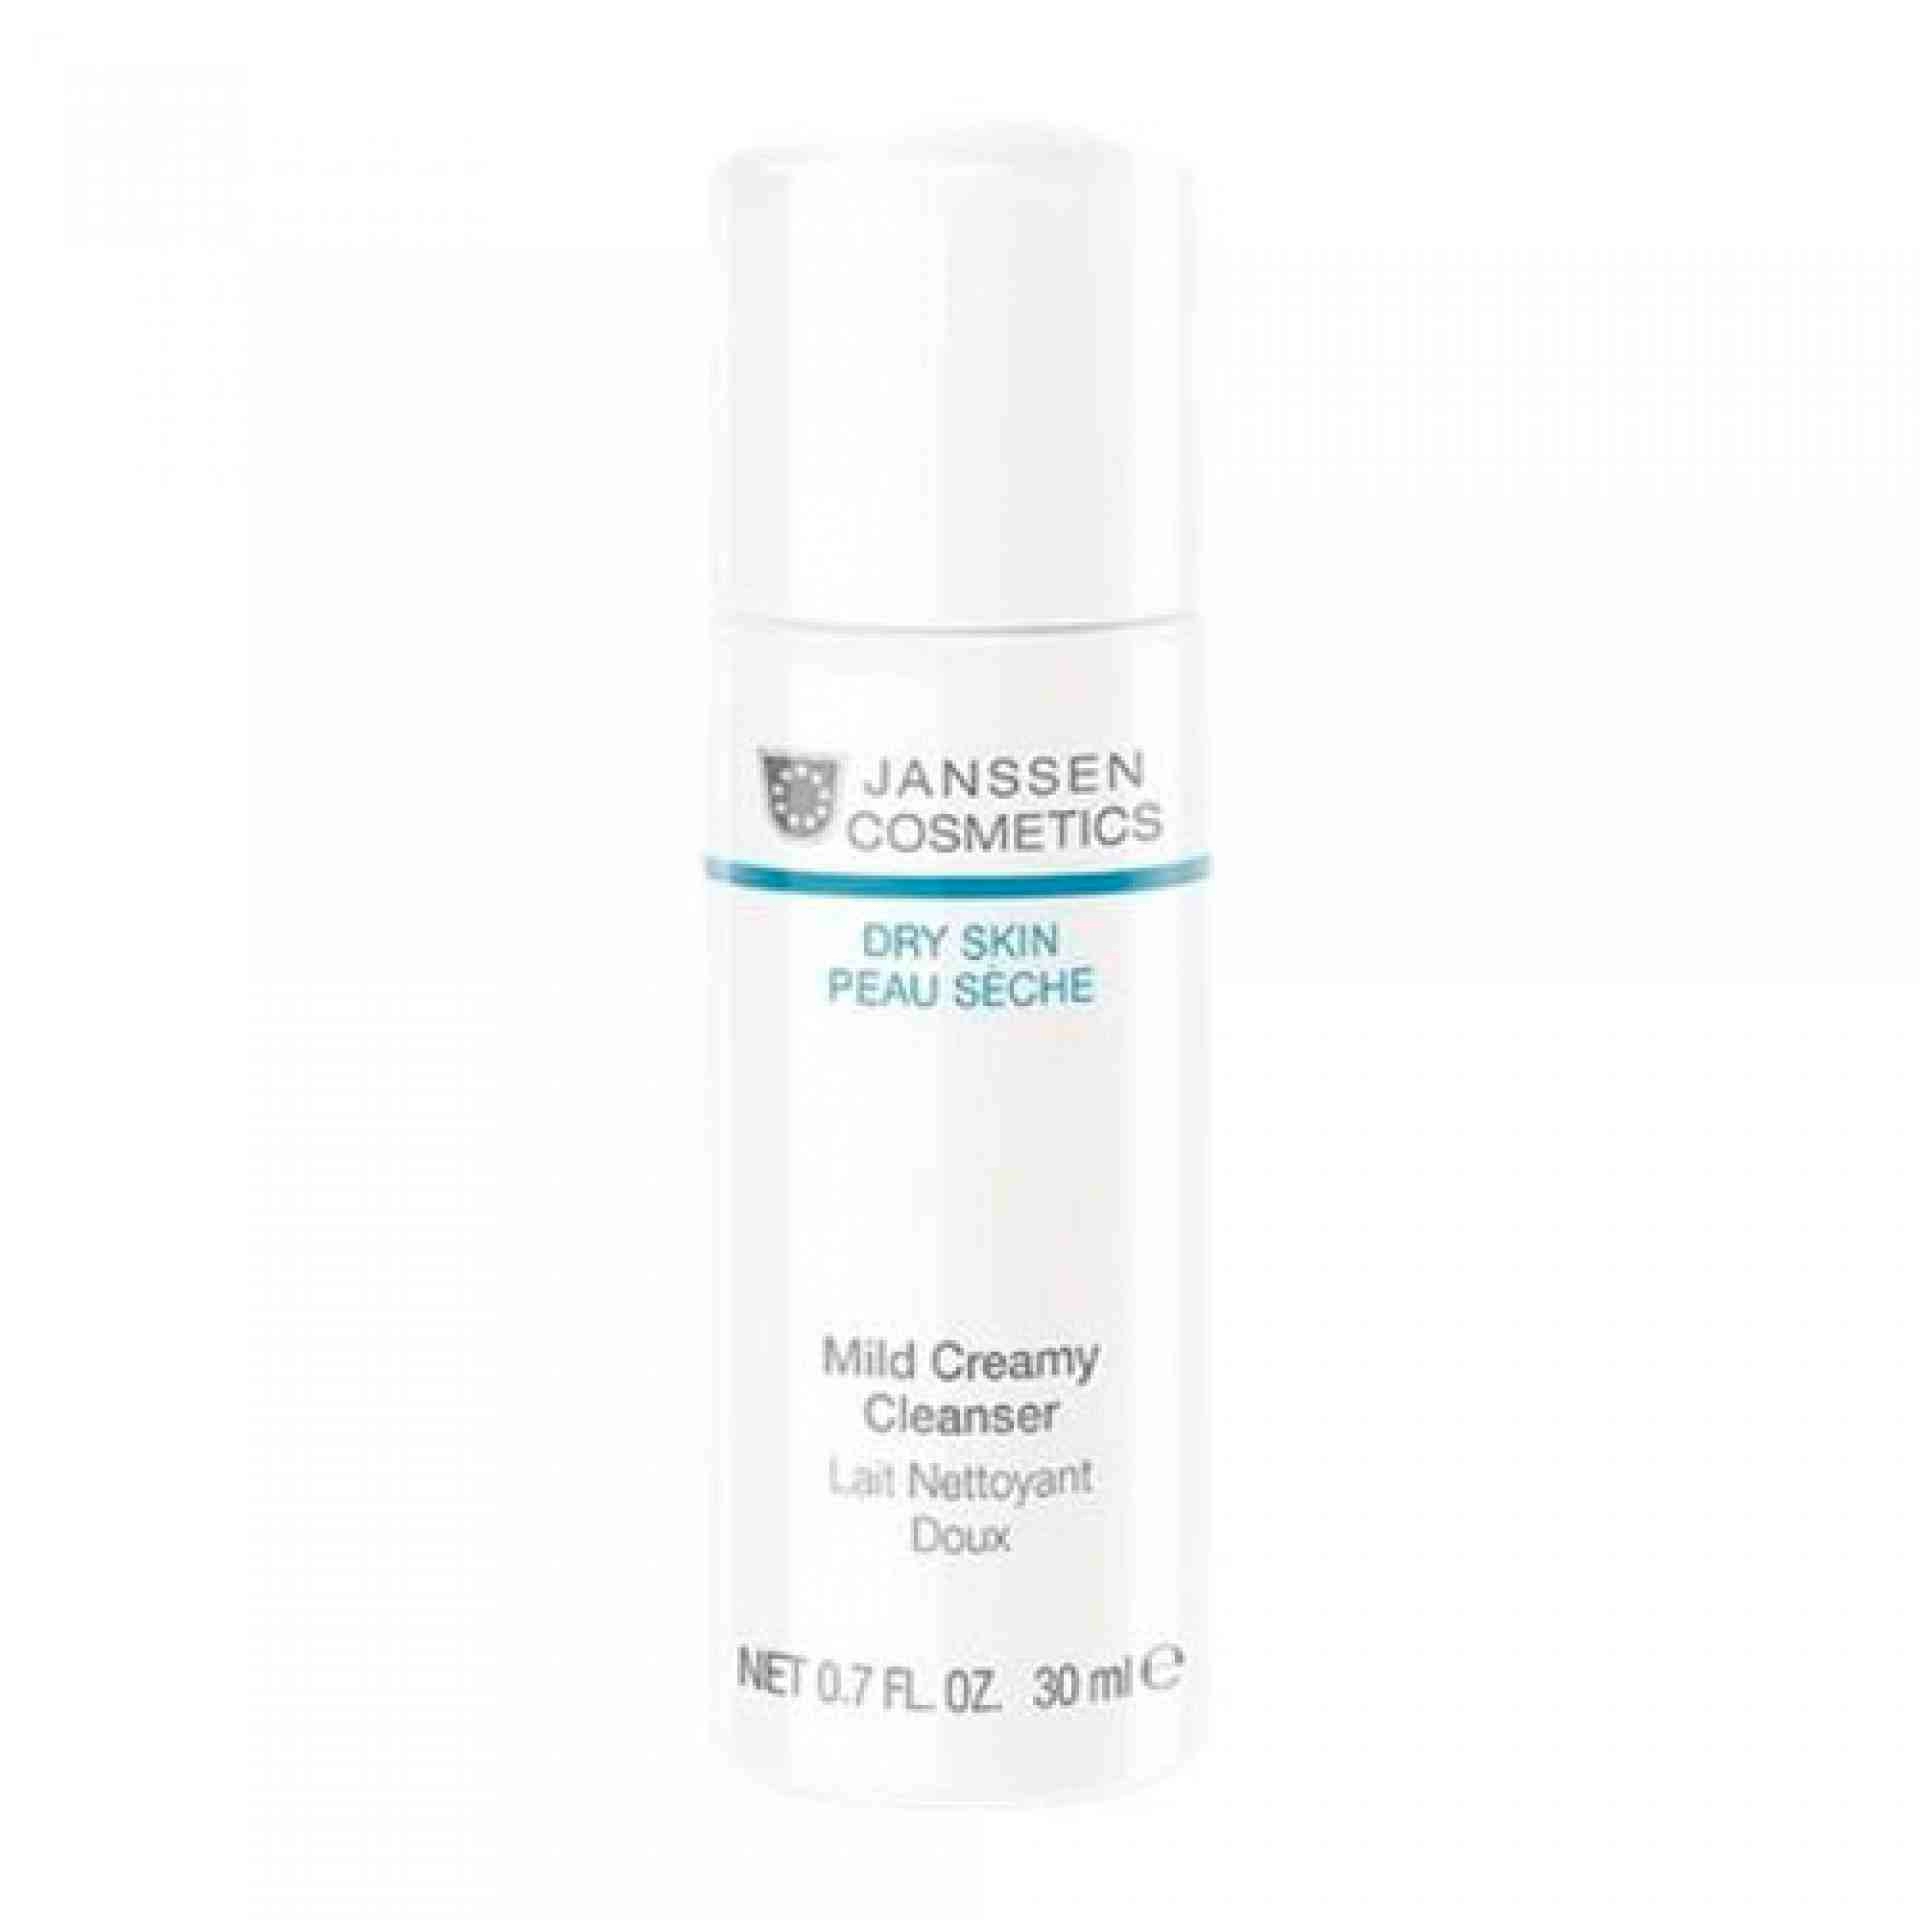 Dry Skin Mild Creamy Cleanser 200ml Janssen Cosmetics®